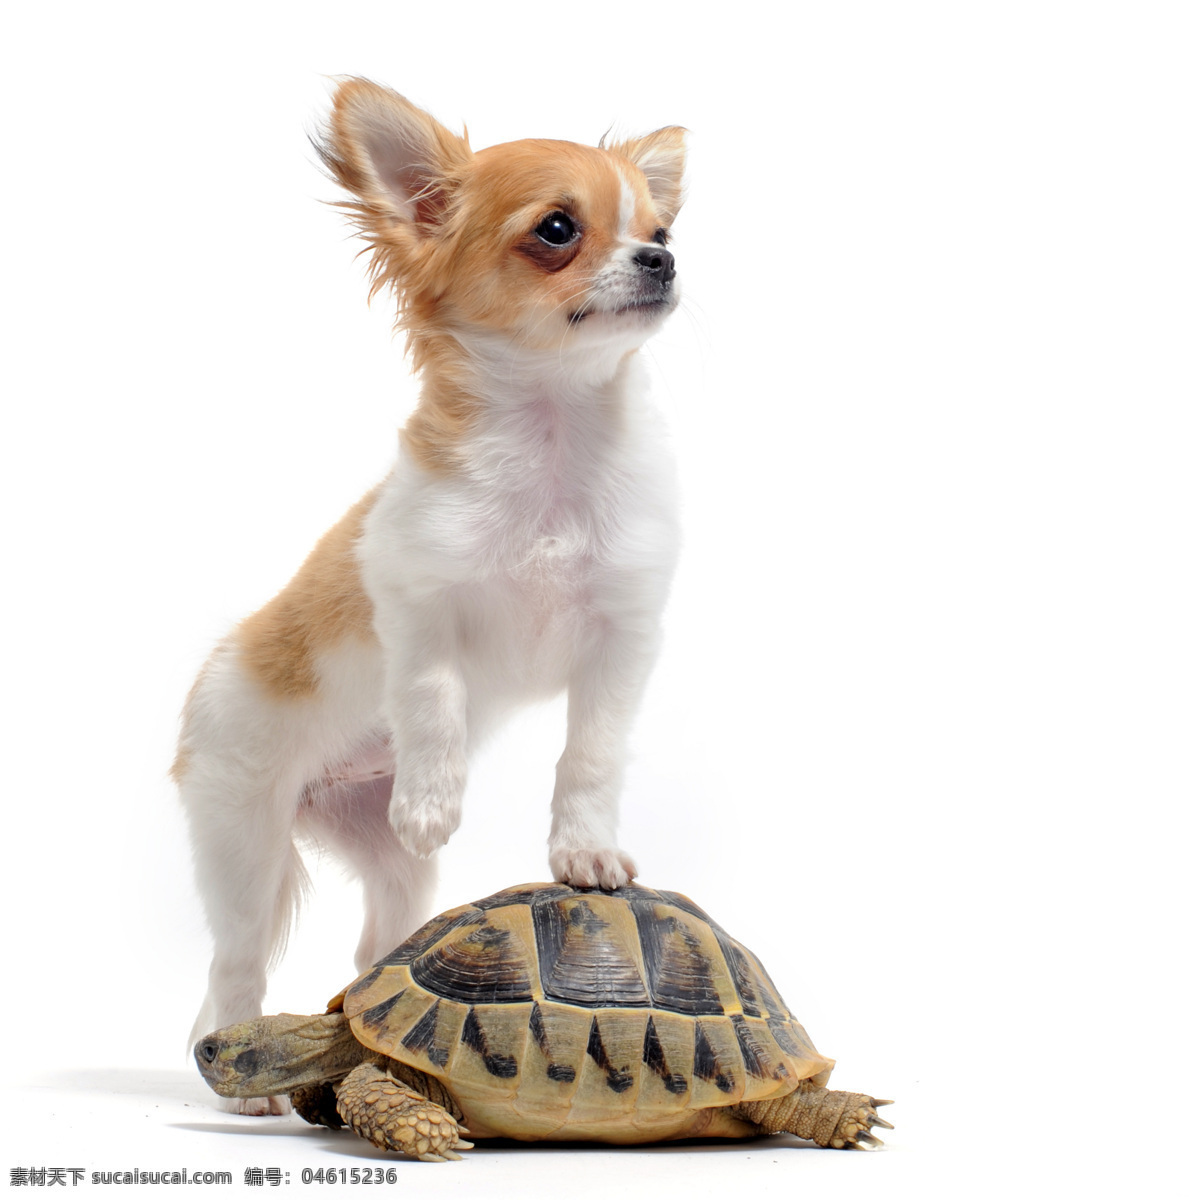 可爱 小狗 乌龟 动物 动物世界 摄影图 宠物 名贵犬种 狗狗图片 生物世界